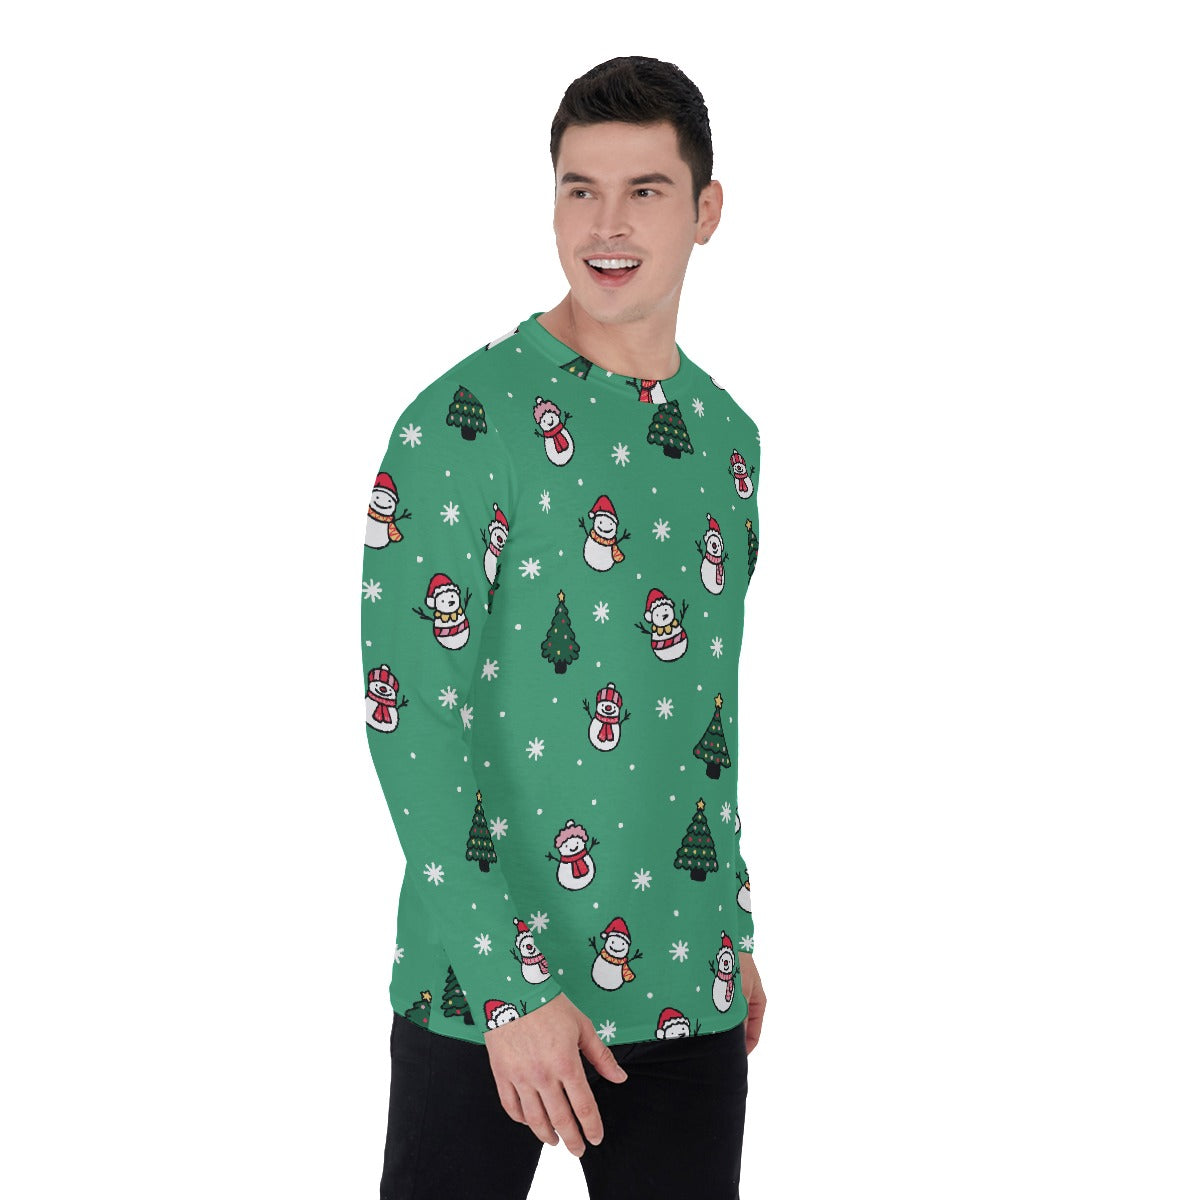 Men's Long Sleeve Christmas T-Shirt- Green Snowman